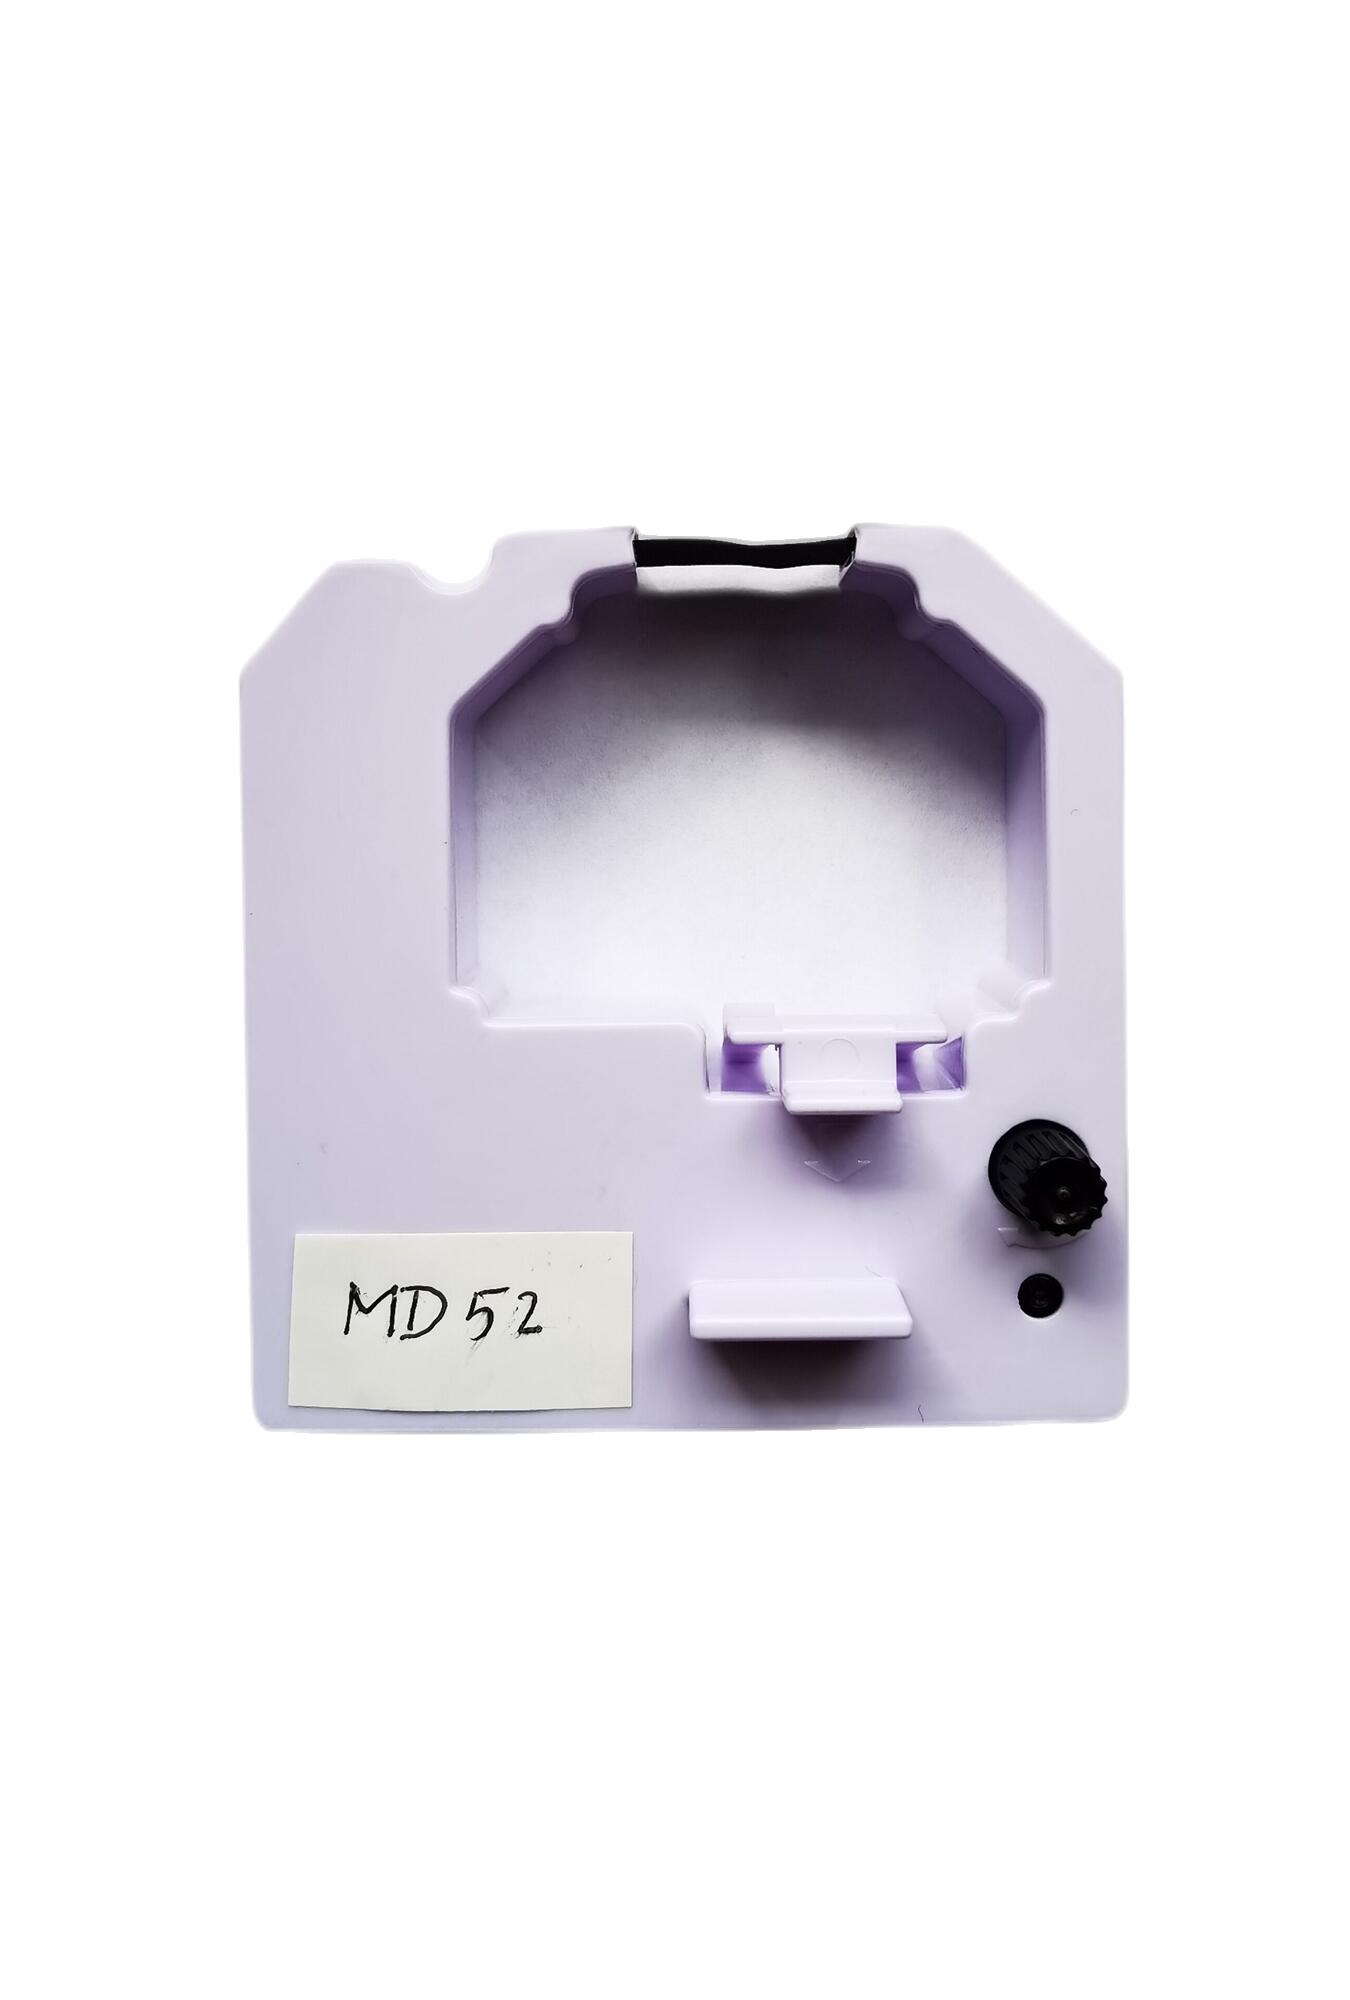 MD52色带适用于安卡MDcare封口机MD8600系列的内部打印机